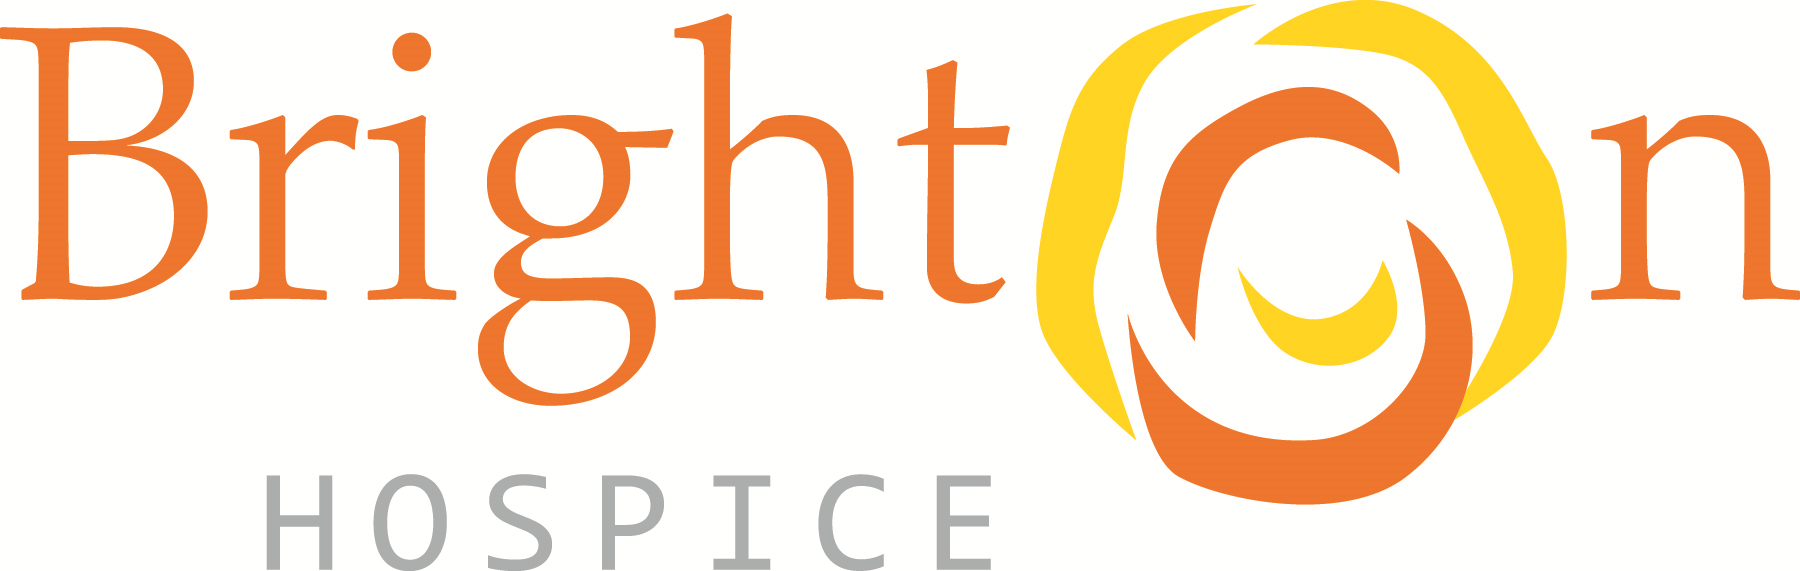 Brighton Hospice Company Logo